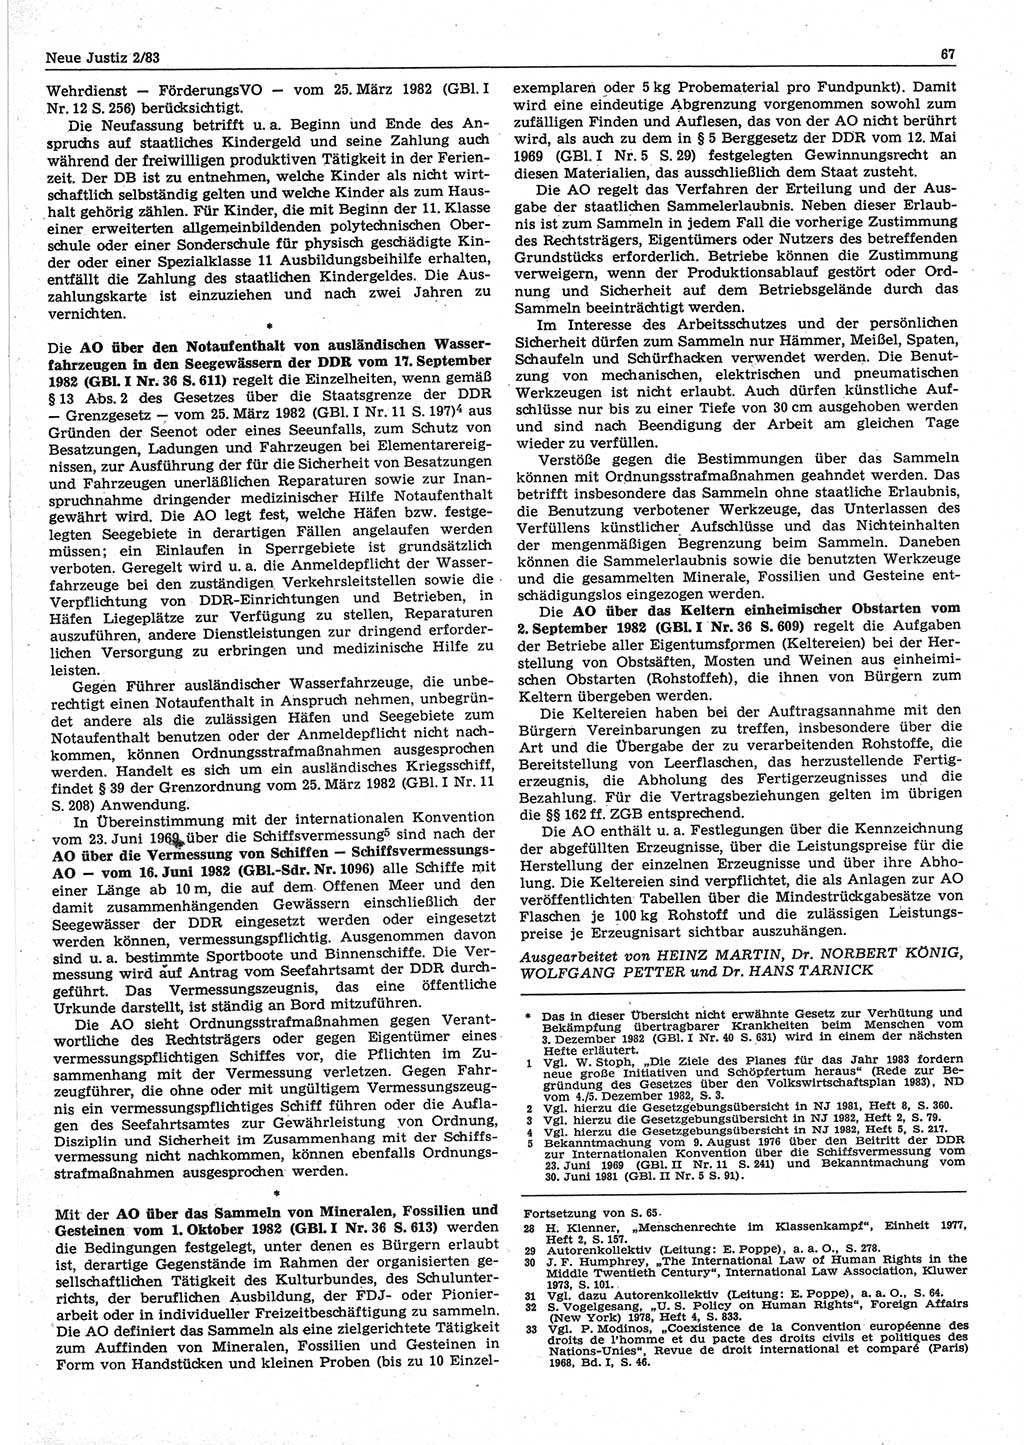 Neue Justiz (NJ), Zeitschrift für sozialistisches Recht und Gesetzlichkeit [Deutsche Demokratische Republik (DDR)], 37. Jahrgang 1983, Seite 67 (NJ DDR 1983, S. 67)